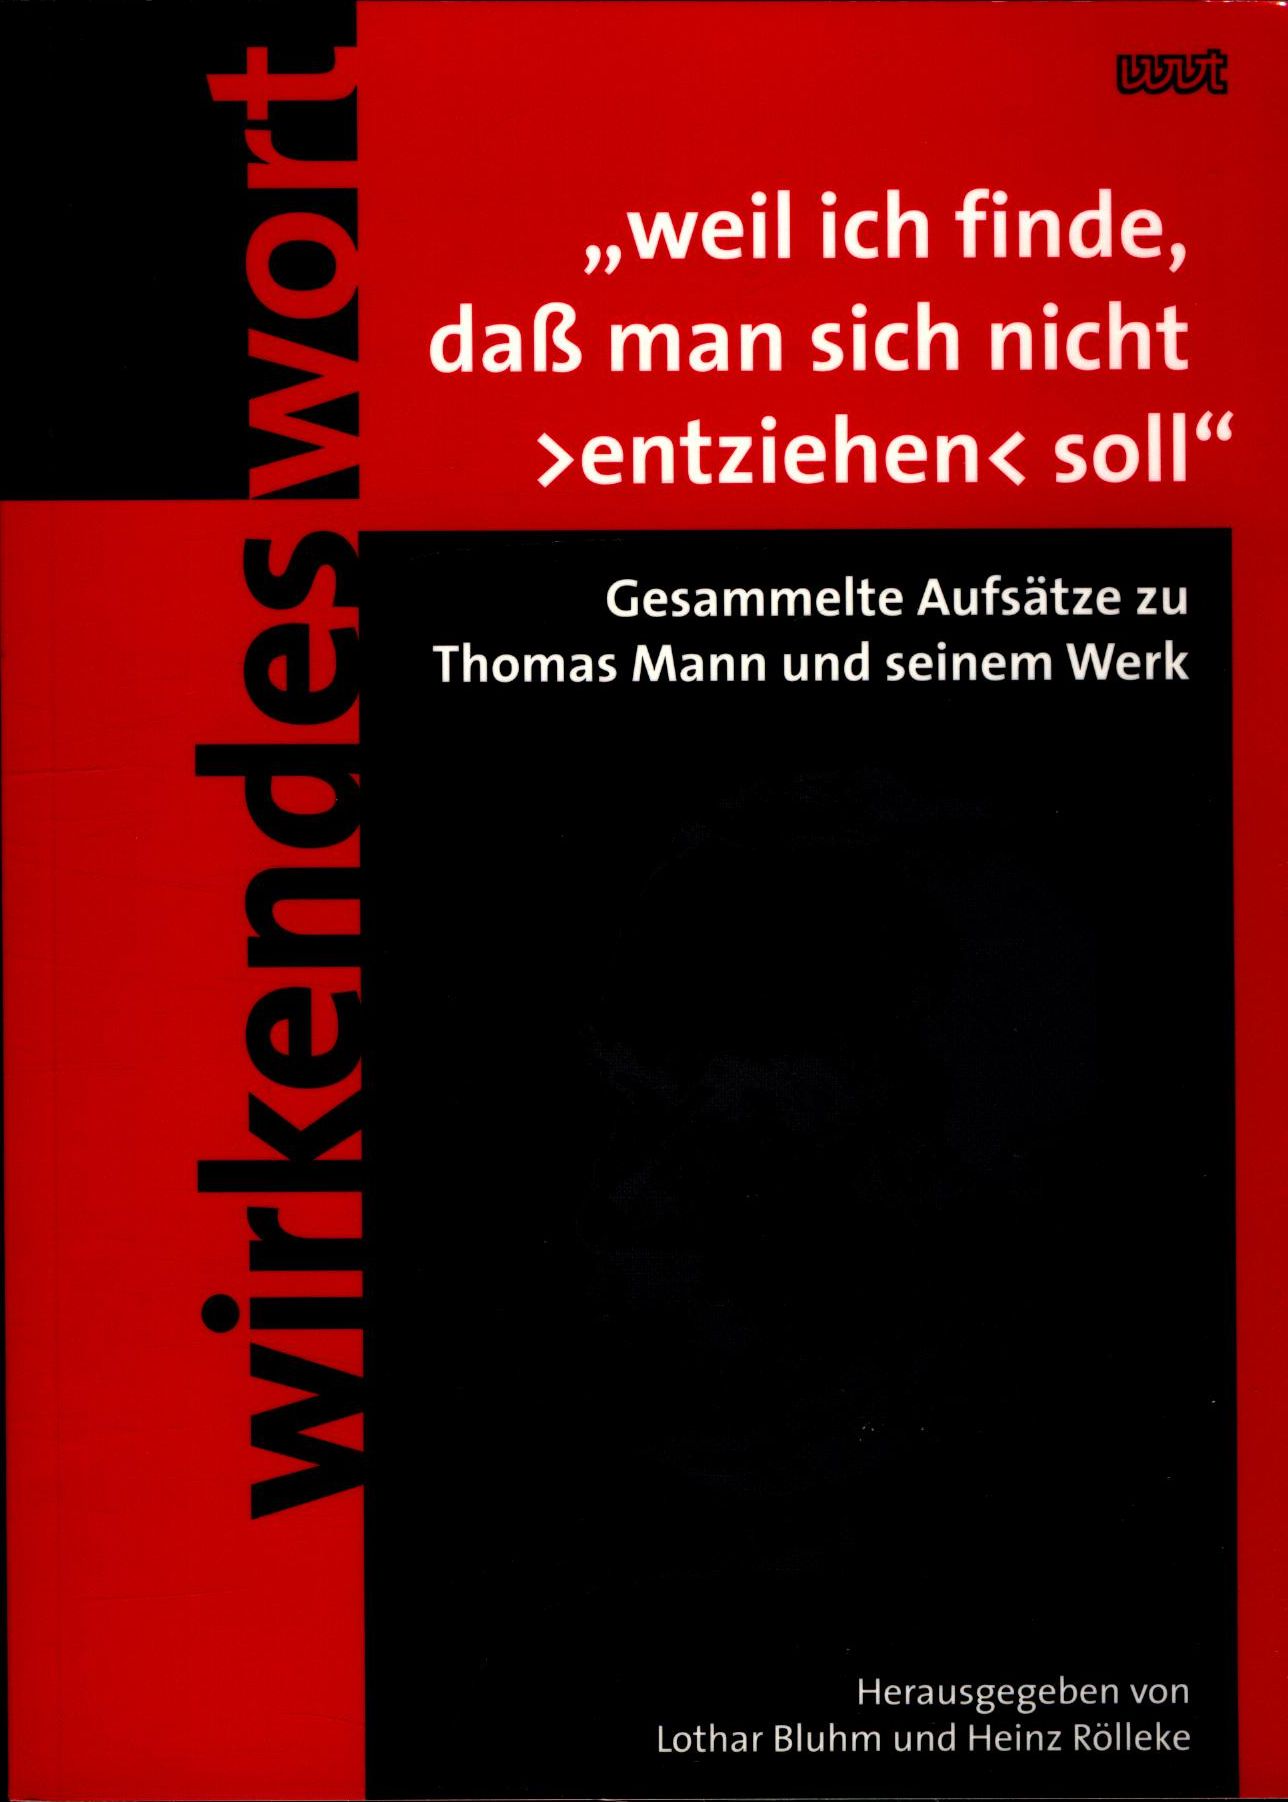 Weil ich finde, dass man sich nicht entziehen soll Gesammelte Aufsätze zu Thomas Mann und seinem Werk - Bluhm, Lothar und Heinz Rölleke